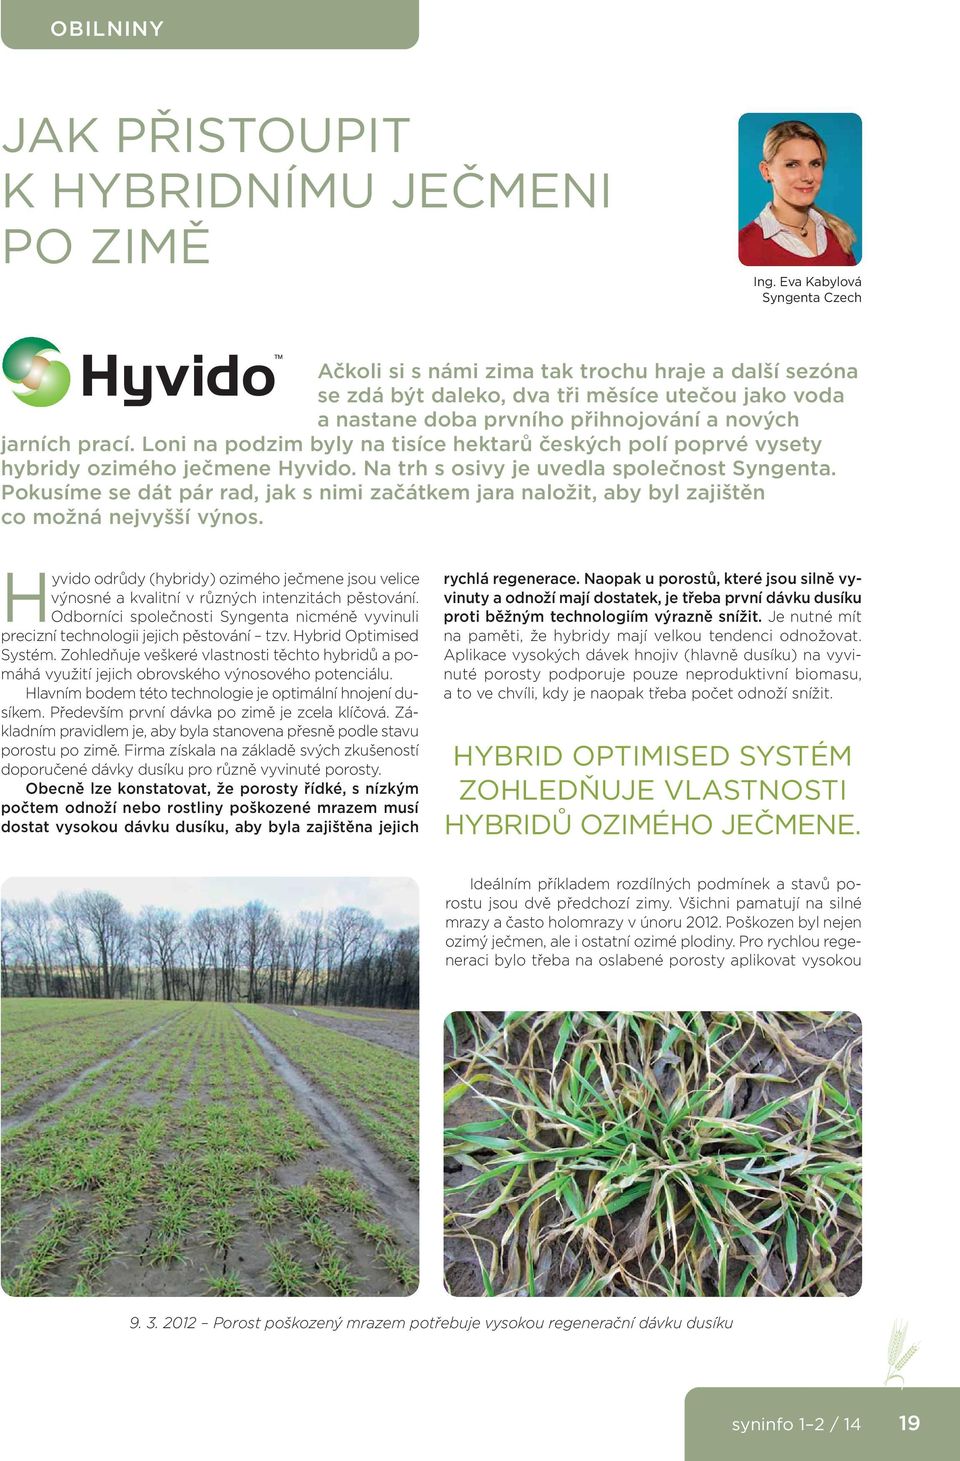 Loni na podzim byly na tisíce hektarů českých polí poprvé vysety hybridy ozimého ječmene Hyvido. Na trh s osivy je uvedla společnost Syngenta.